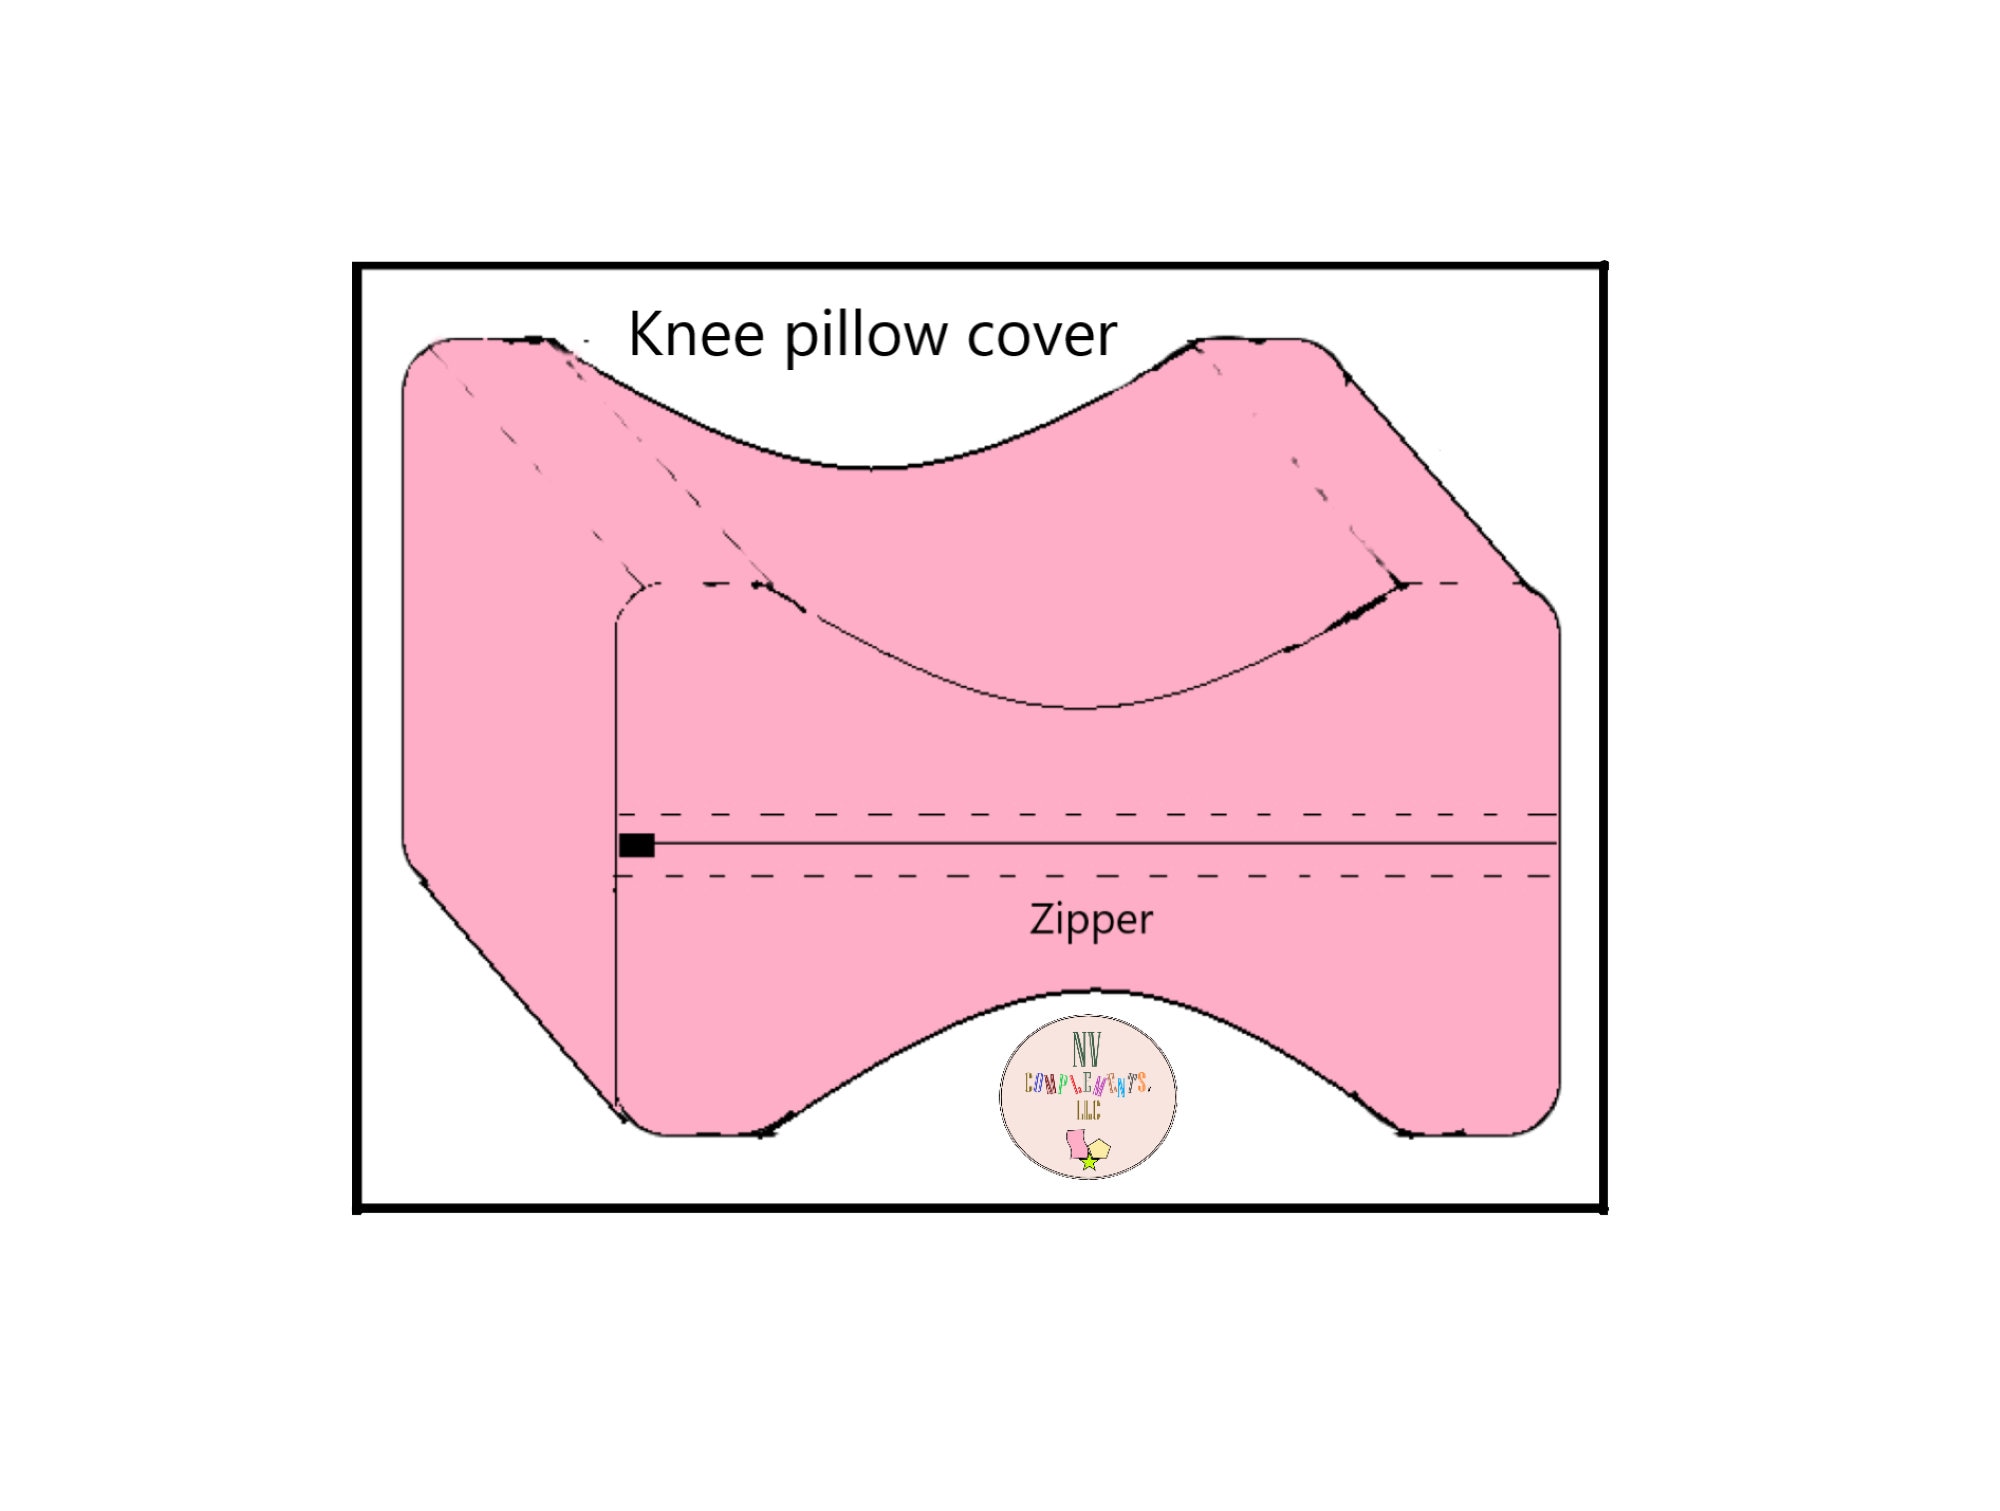 CosyTech Knee Pillow - Leg Pillow - Bolster Pillow for Legs - Sciatica Pain  Relief Pillow - Premium Memory Foam Half Moon Pillow - Leg Pillows for  Sleeping - Knee Pillow for Side Sleepers